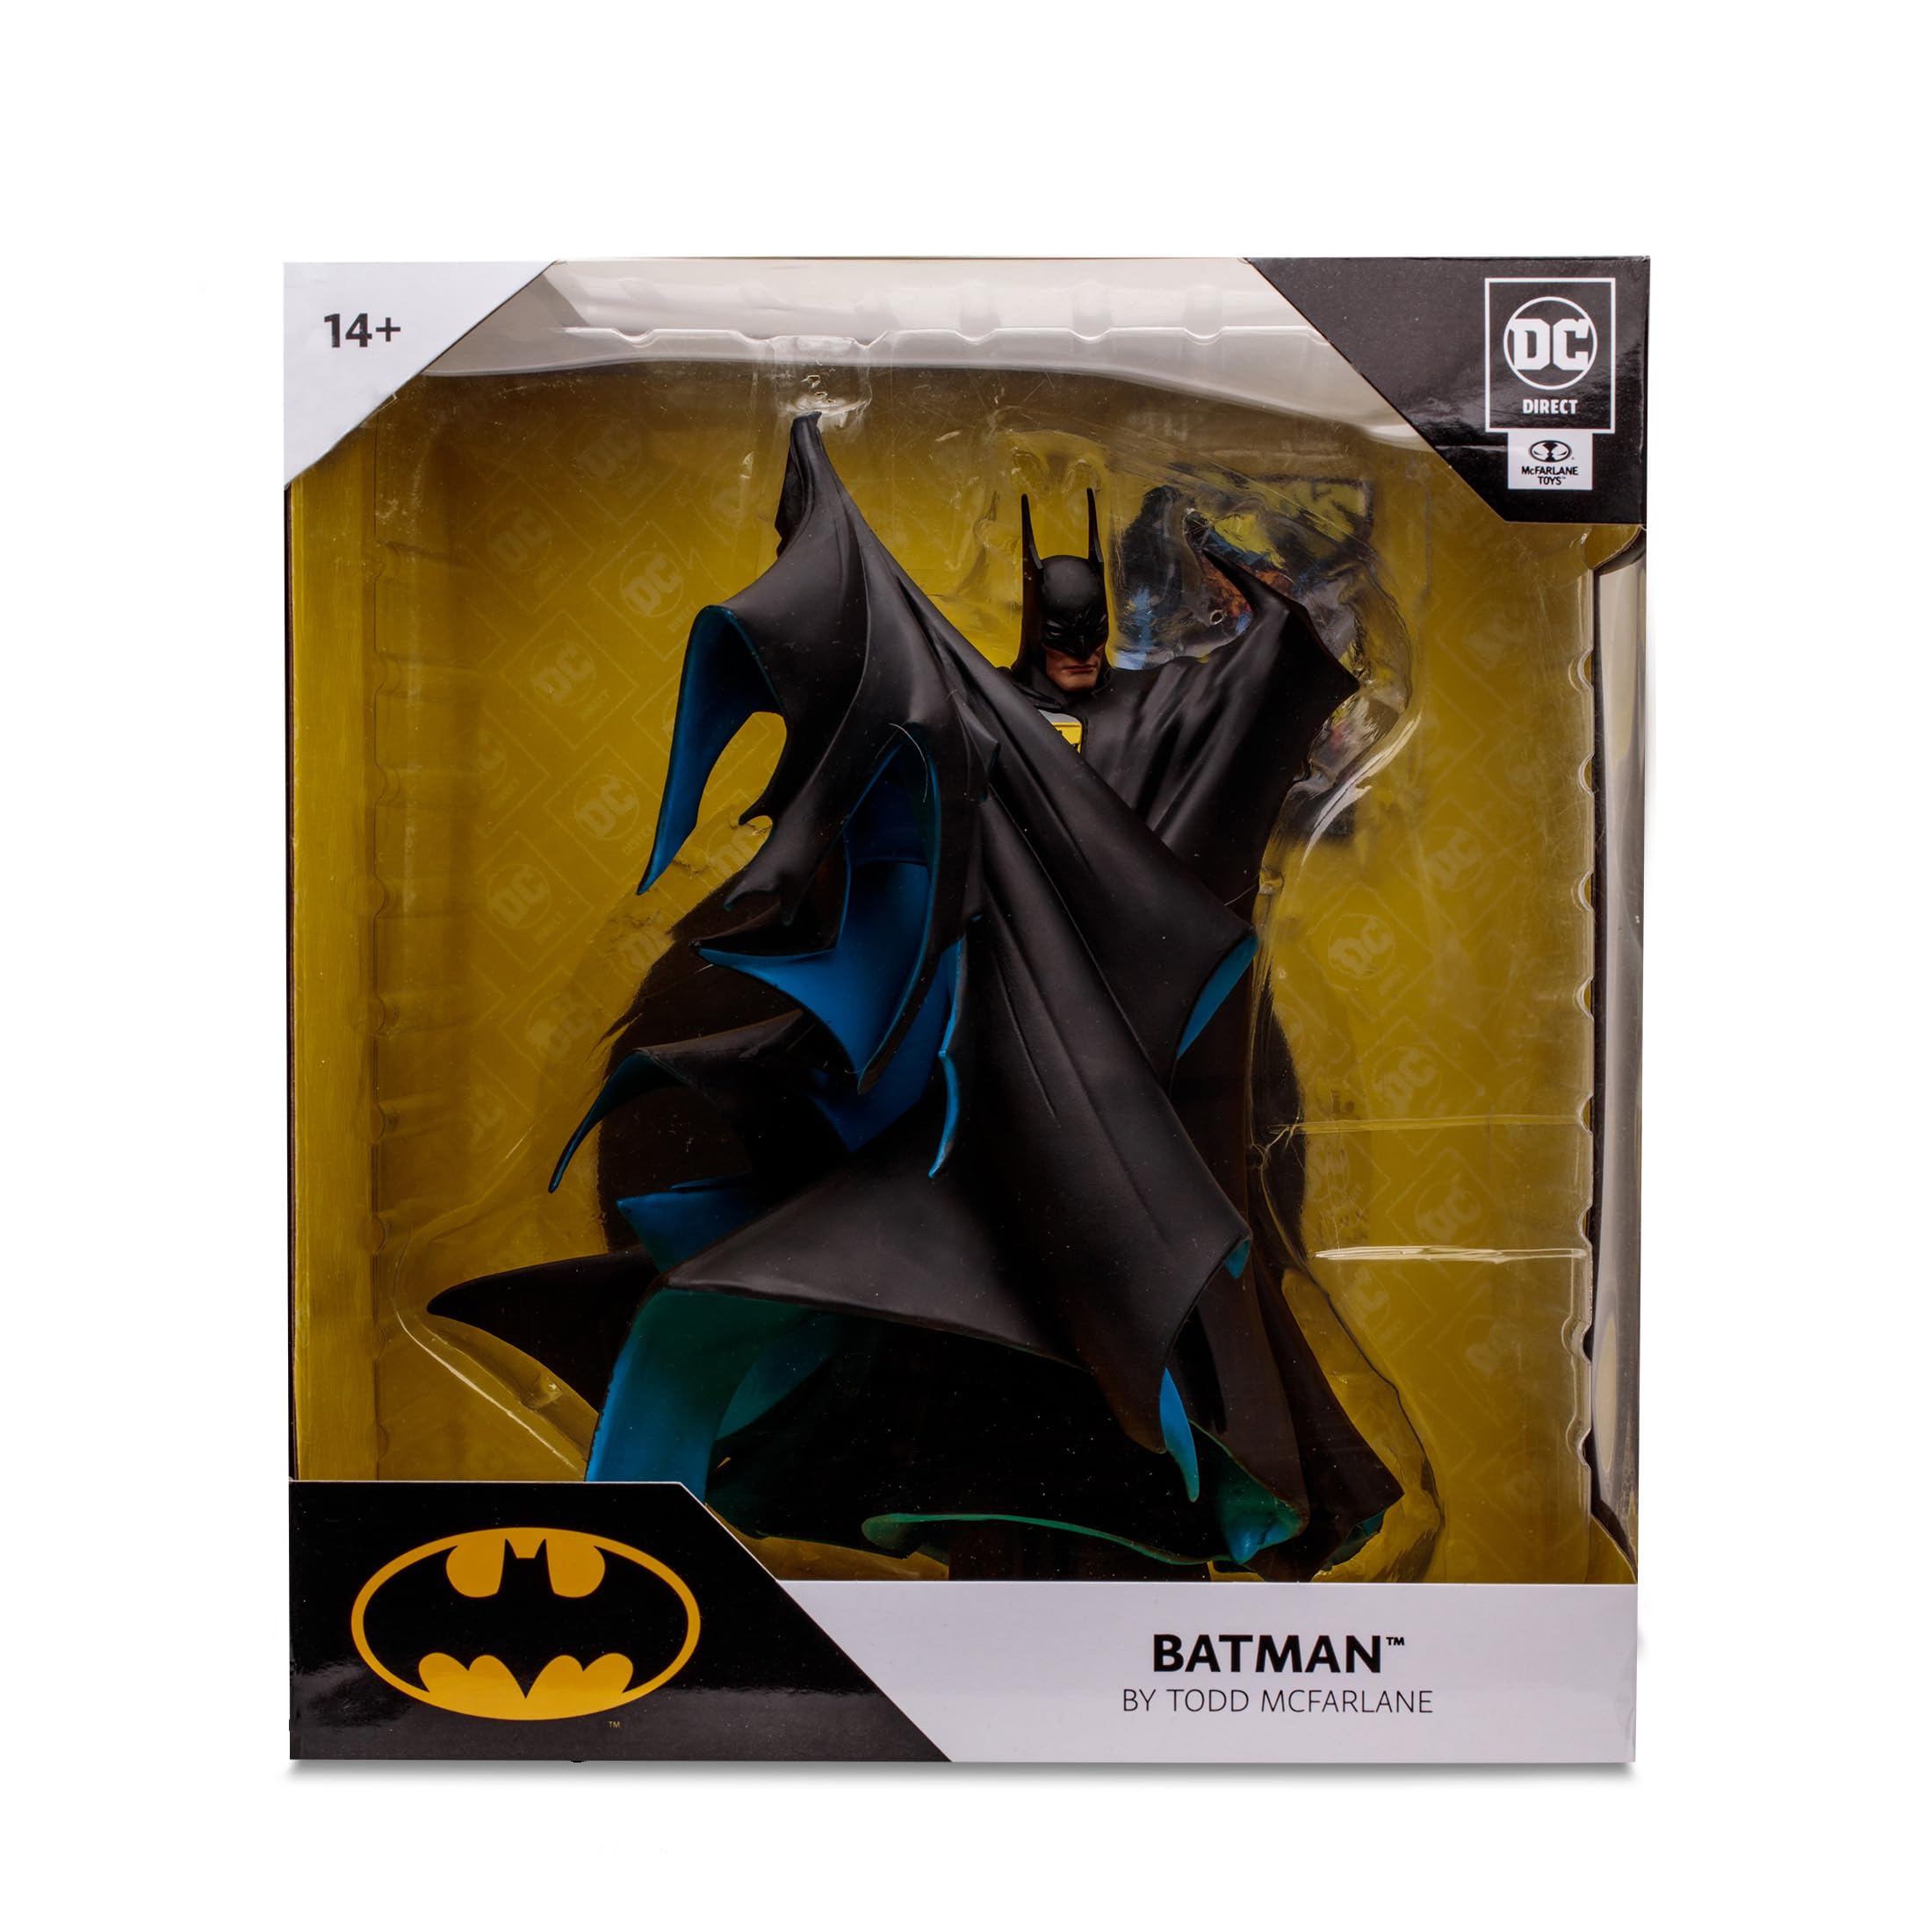 McFarlane Toys - DC Direct Batman by Todd McFarlane 1:8 Scale Statue